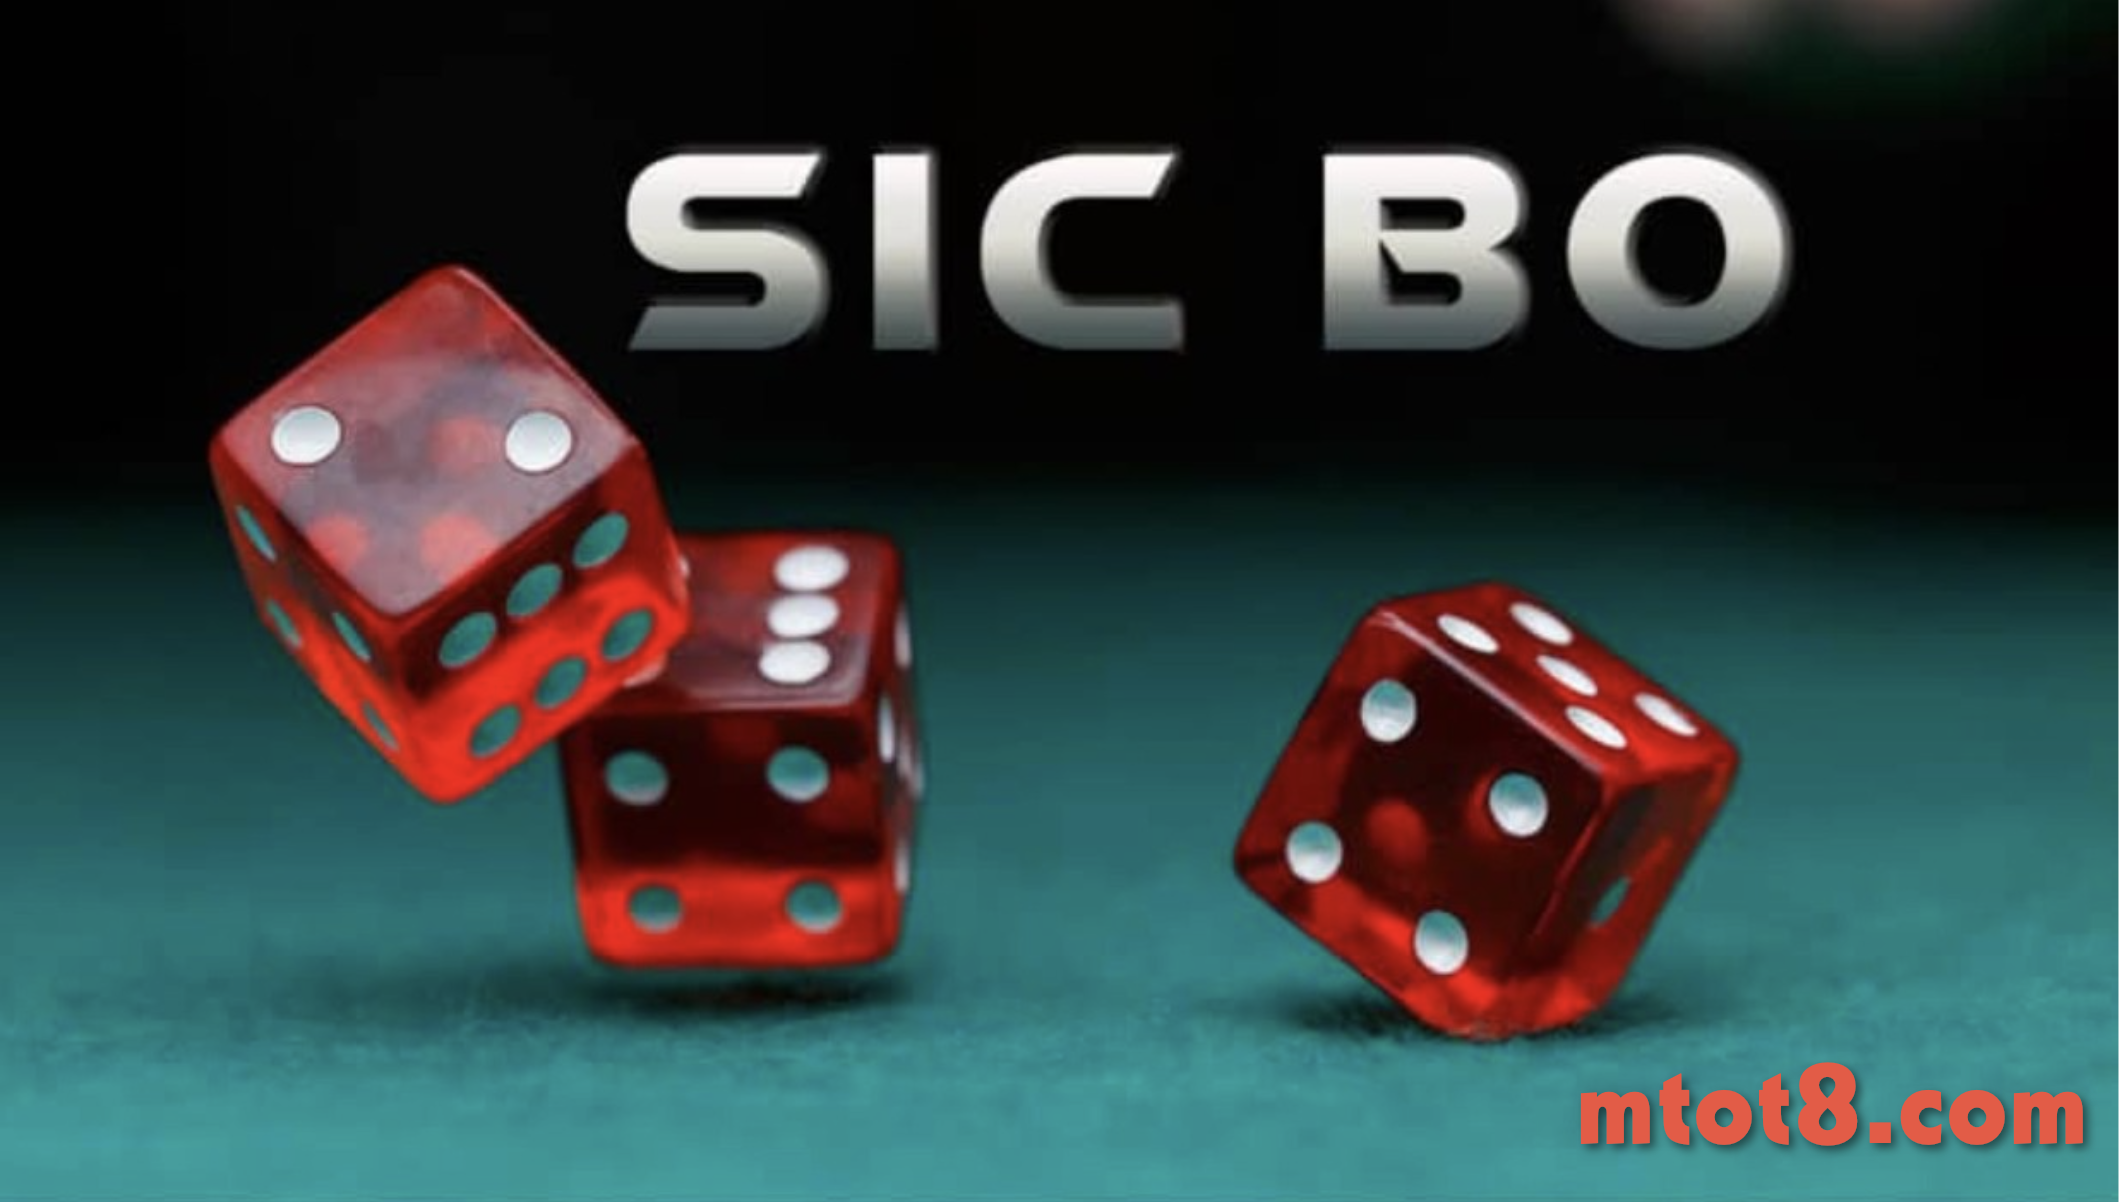 Hướng dẫn cách chơi Sicbo online tại M88